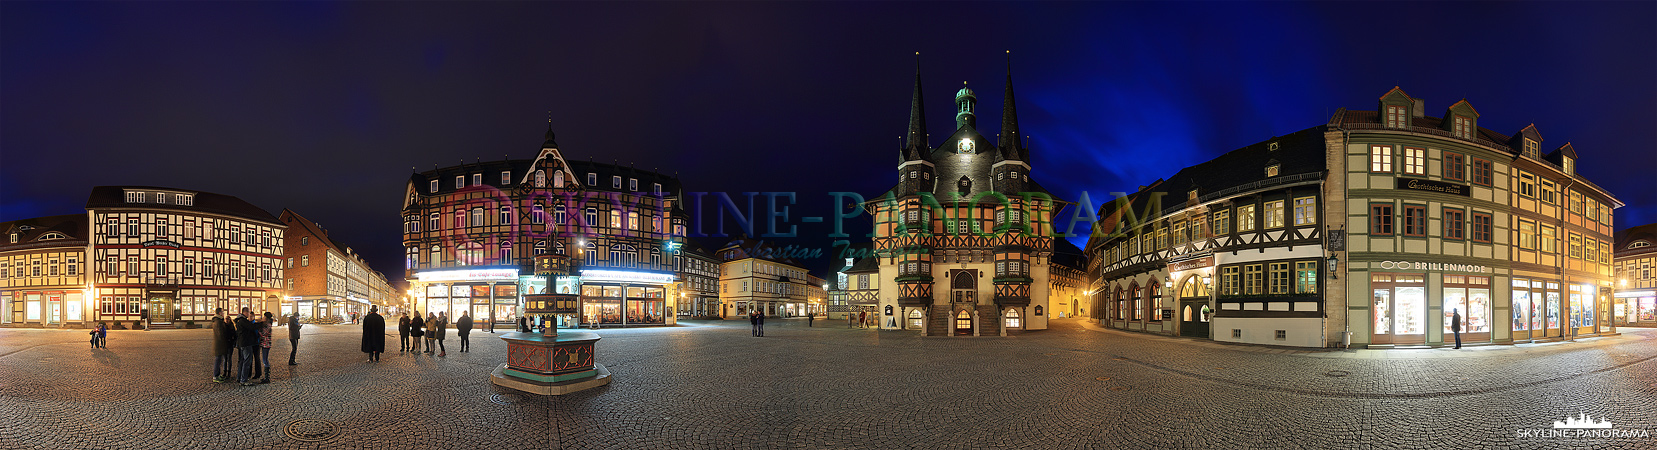 Wernigerode Marktplatz und Rathaus (p_00855)